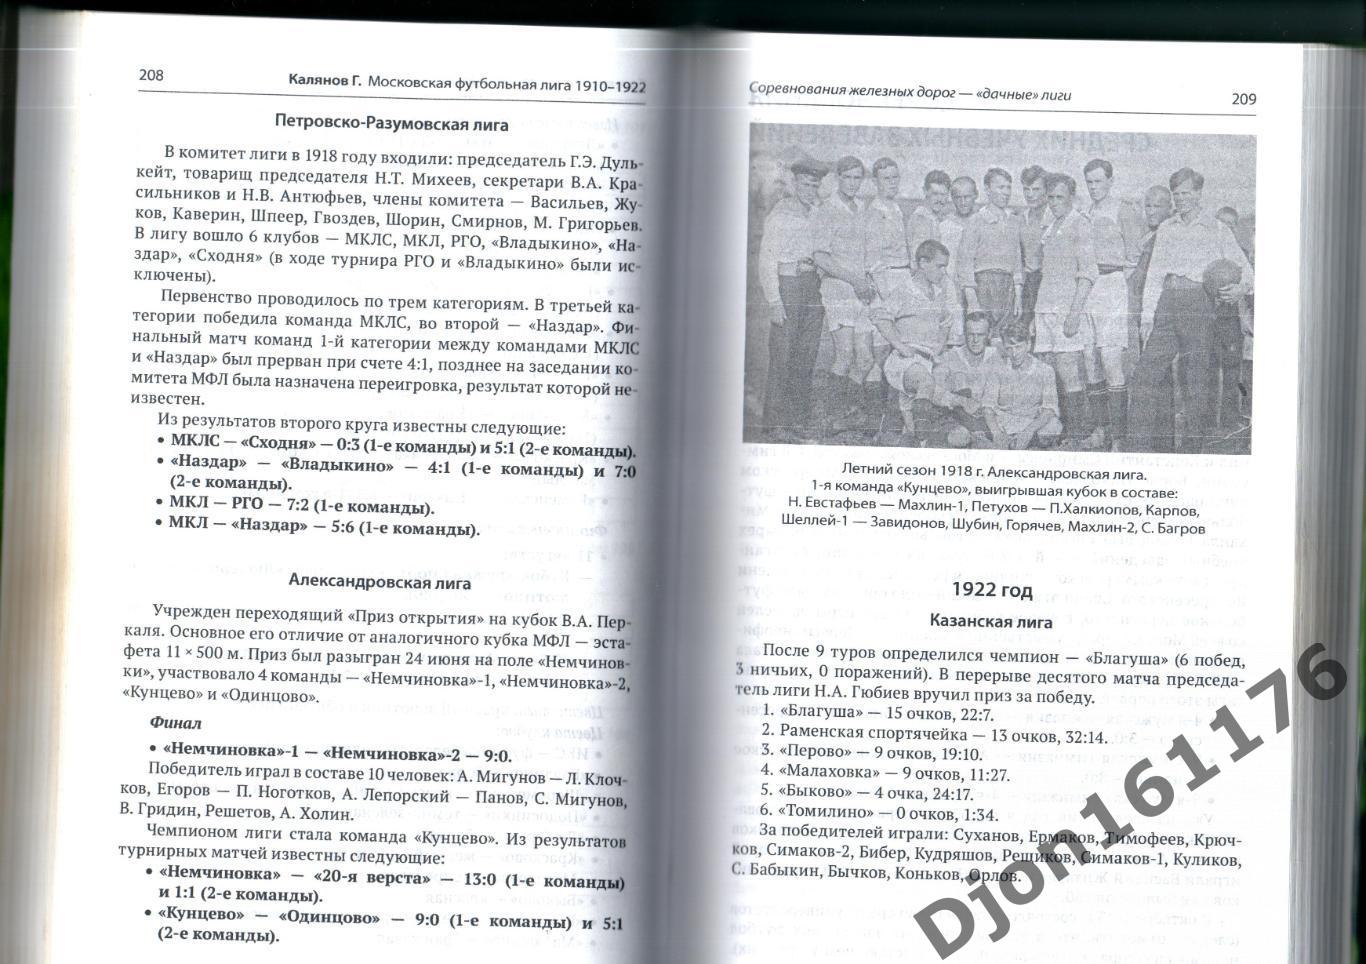 Калянов Г.Н. «Московская футбольная лига 1910-1922».3-е издание. 2